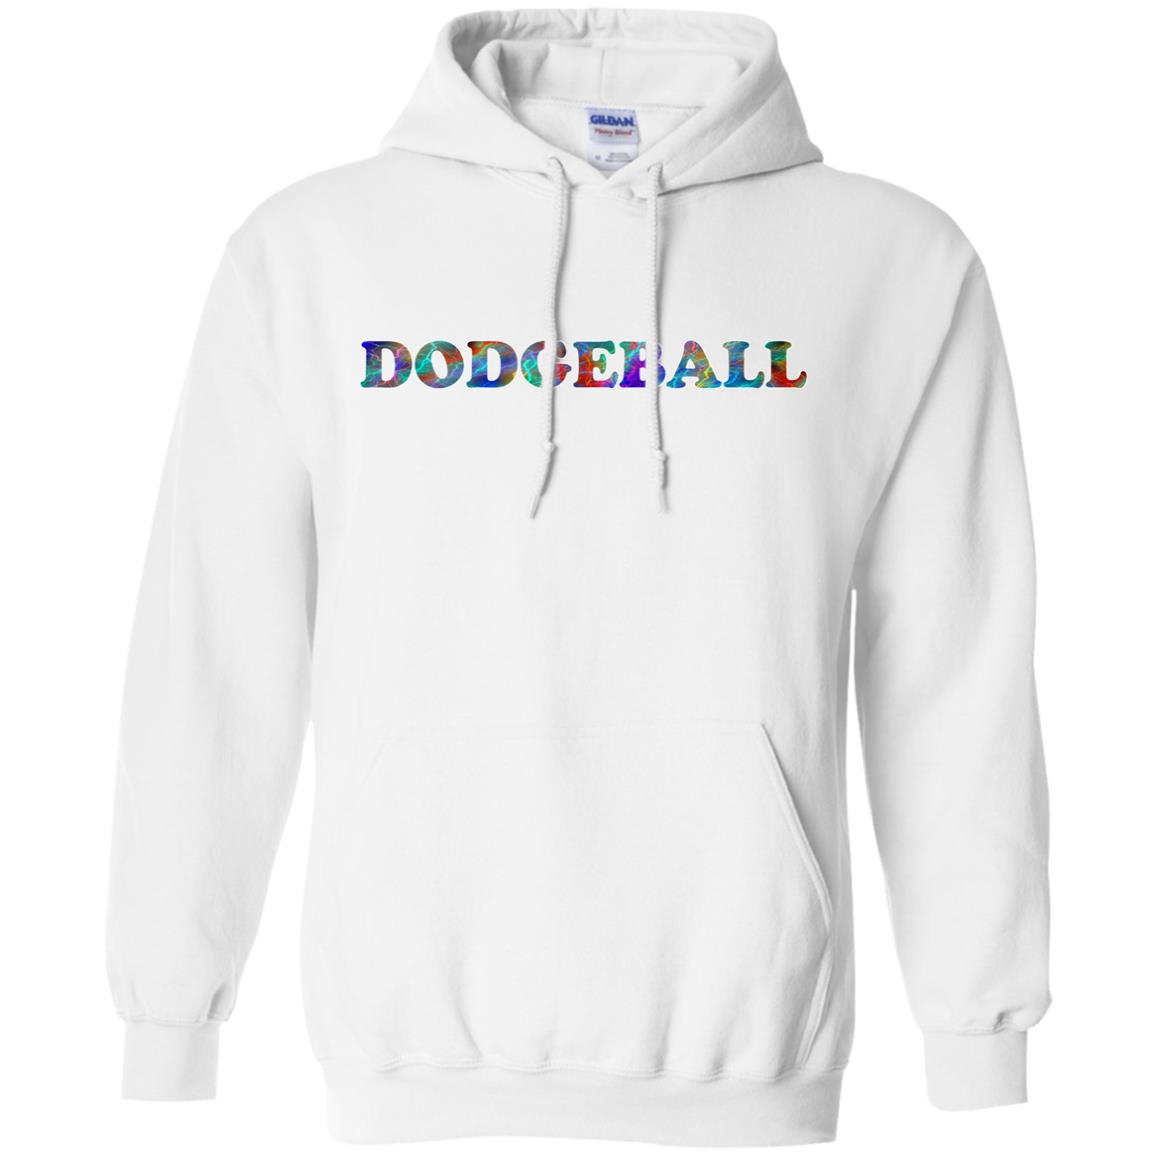 Dodgeball Hoodie